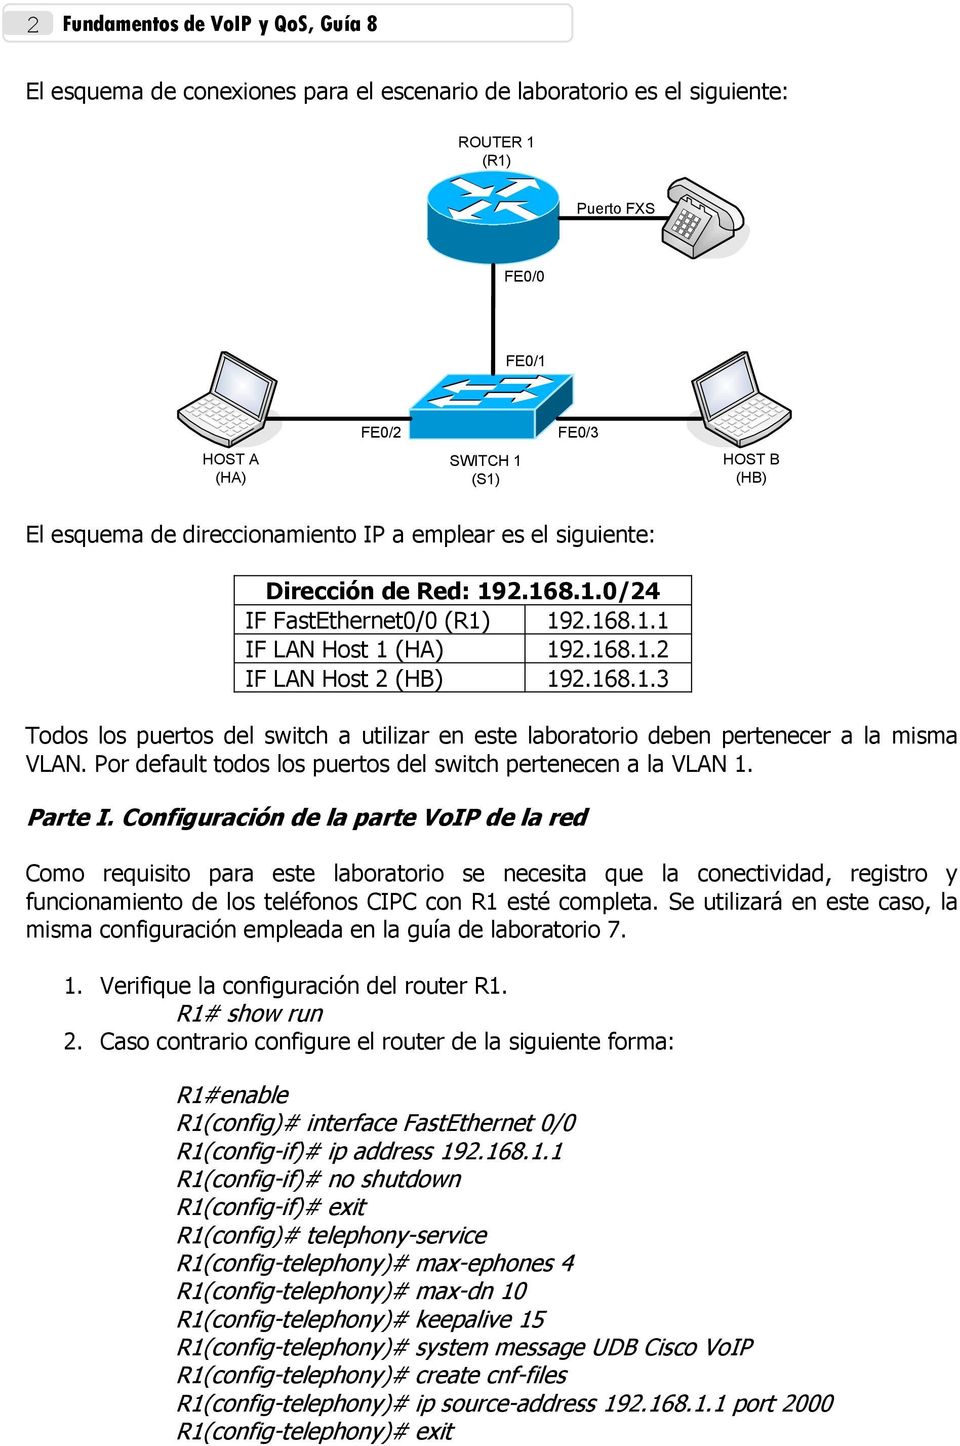 Por default todos los puertos del switch pertenecen a la VLAN 1. Parte I.